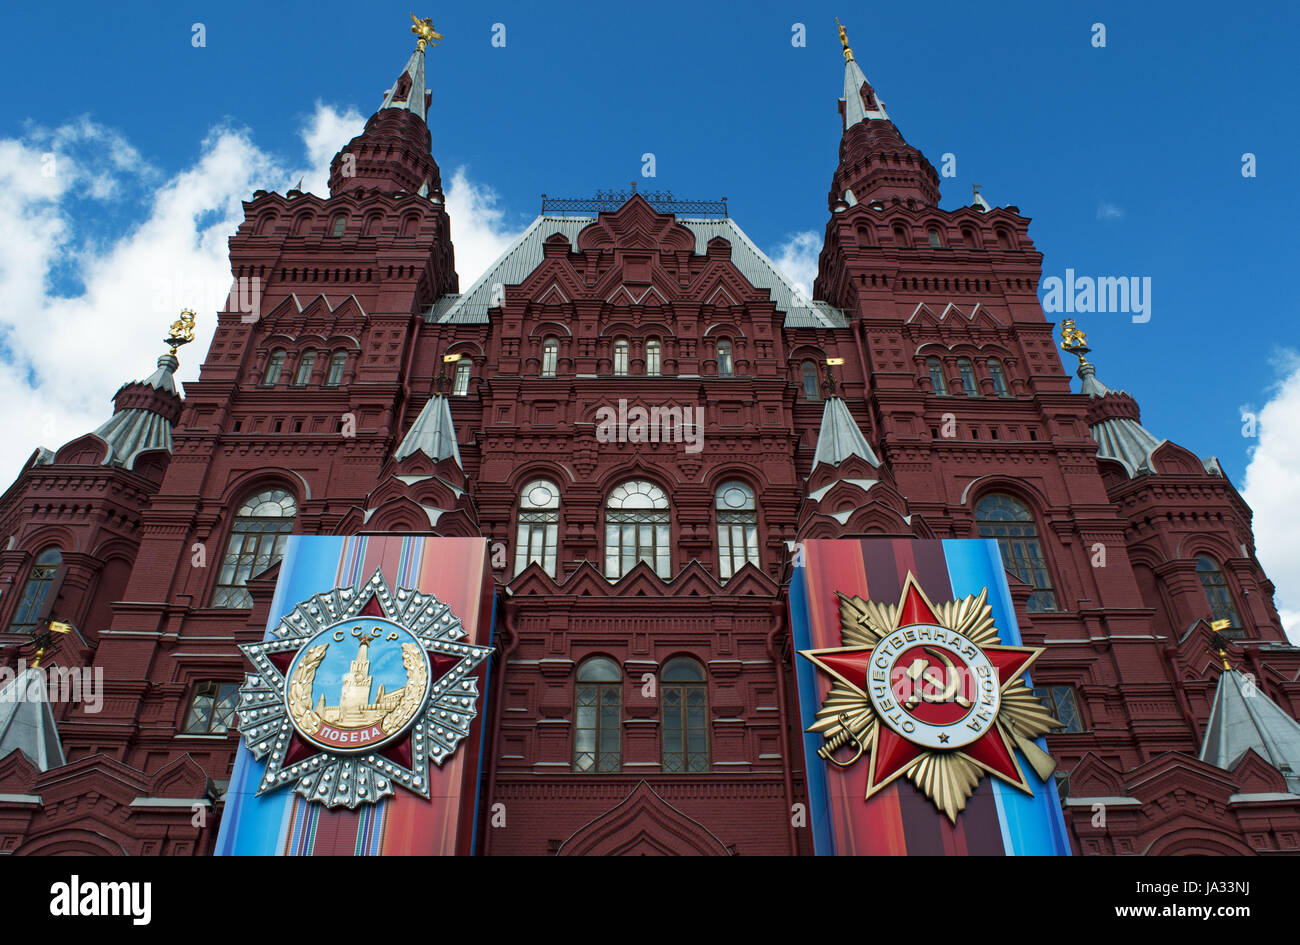 Le decorazioni per il 1 maggio sfilano sulla facciata del museo storico statale, la storia russa museo in un iconico del XIX secolo edificio rosso Foto Stock